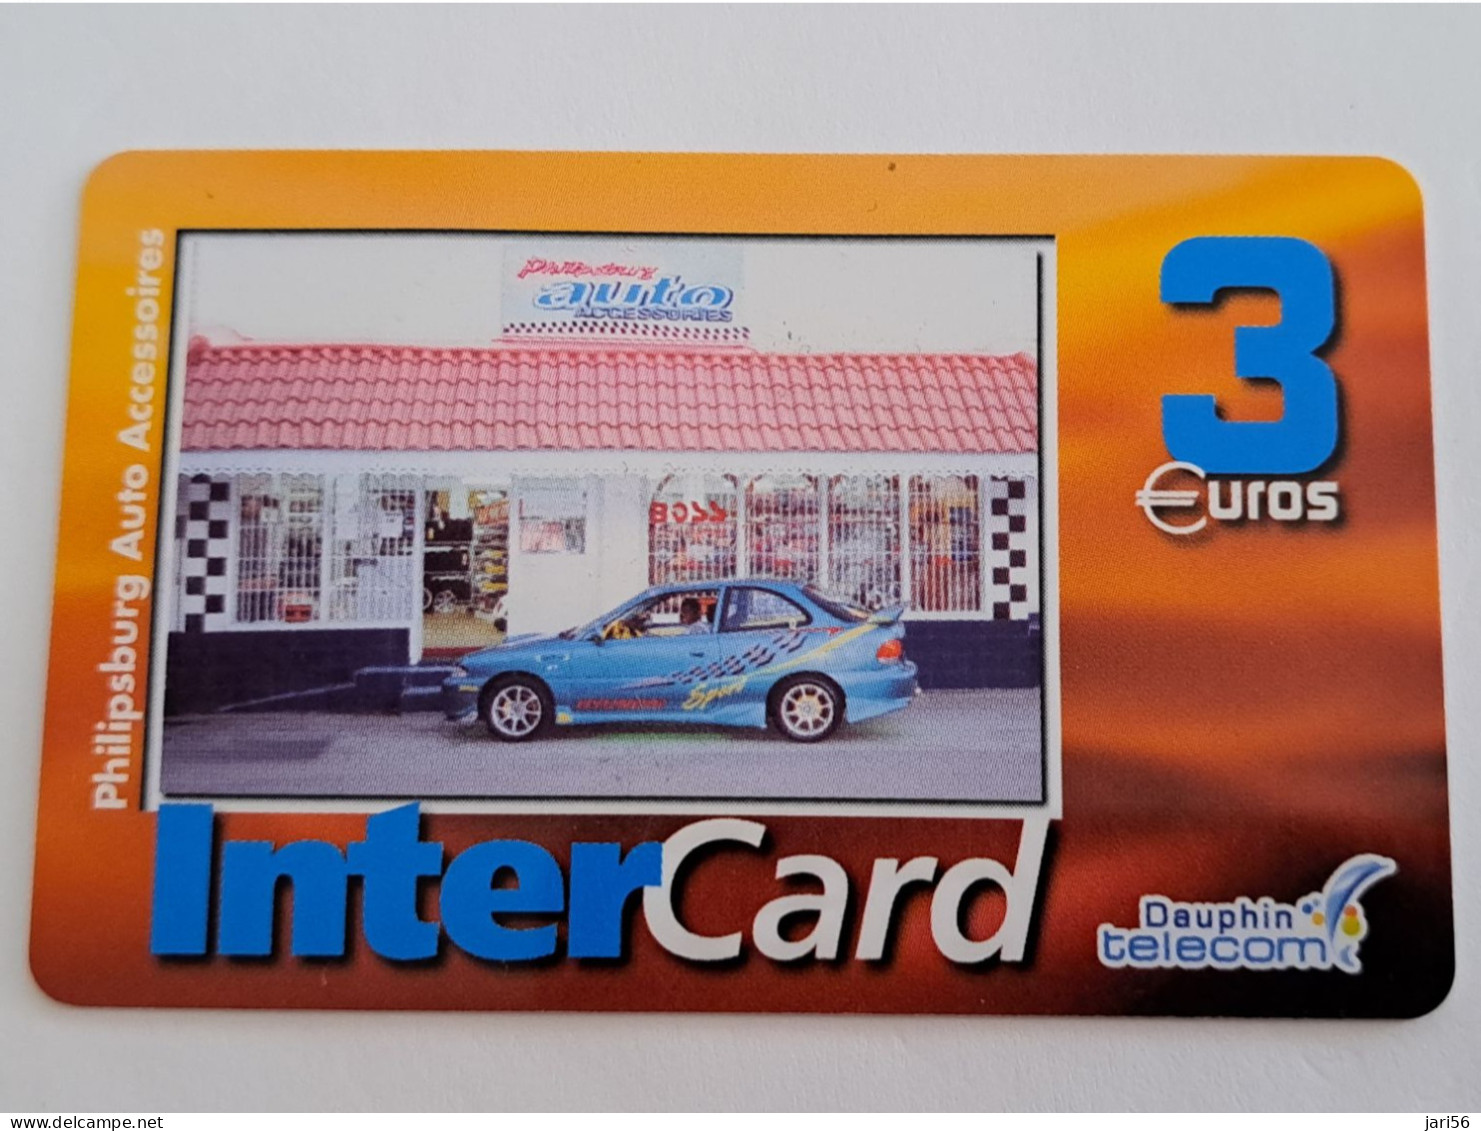 ST MARTIN / INTERCARD  3 EURO    PHILIPSBURG AUTO ACCESSOIRES          NO 146   Fine Used Card    ** 13717 ** - Antillen (Französische)